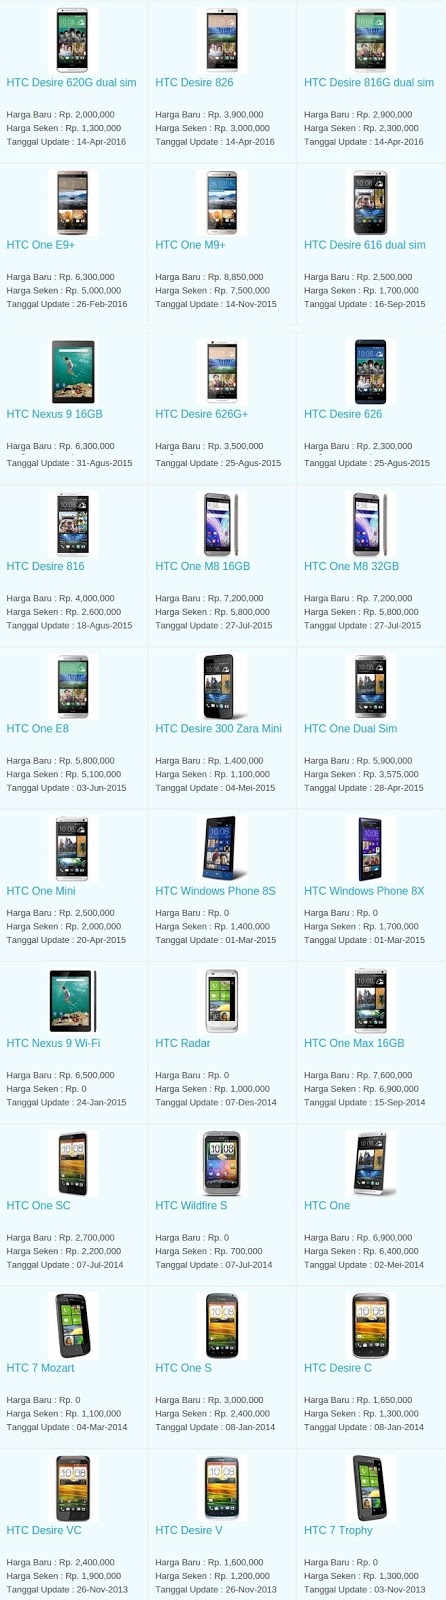 Daftar Harga Hp Terbaru HTC Mei 2016